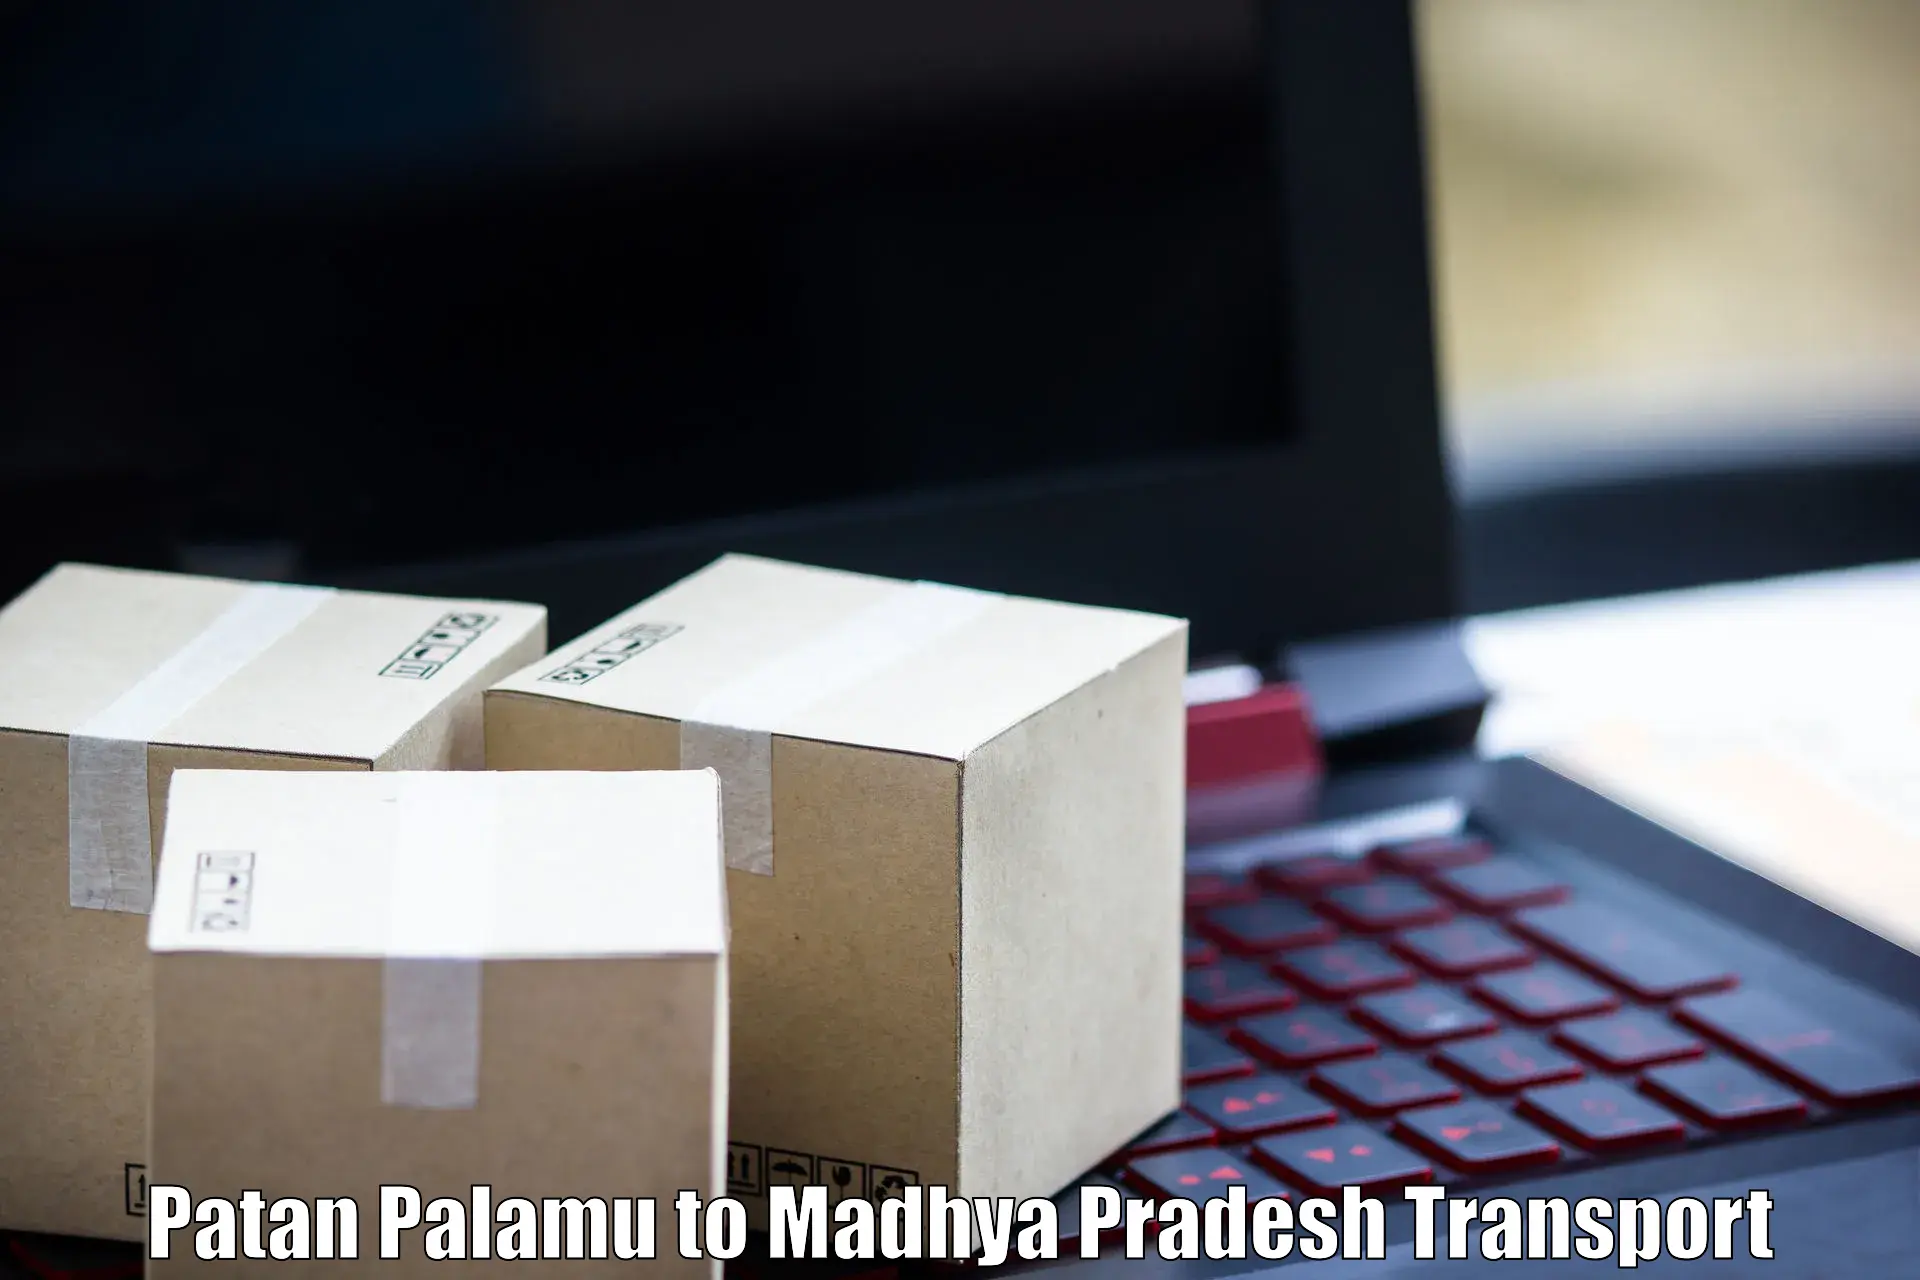 Daily transport service Patan Palamu to Gadarwara